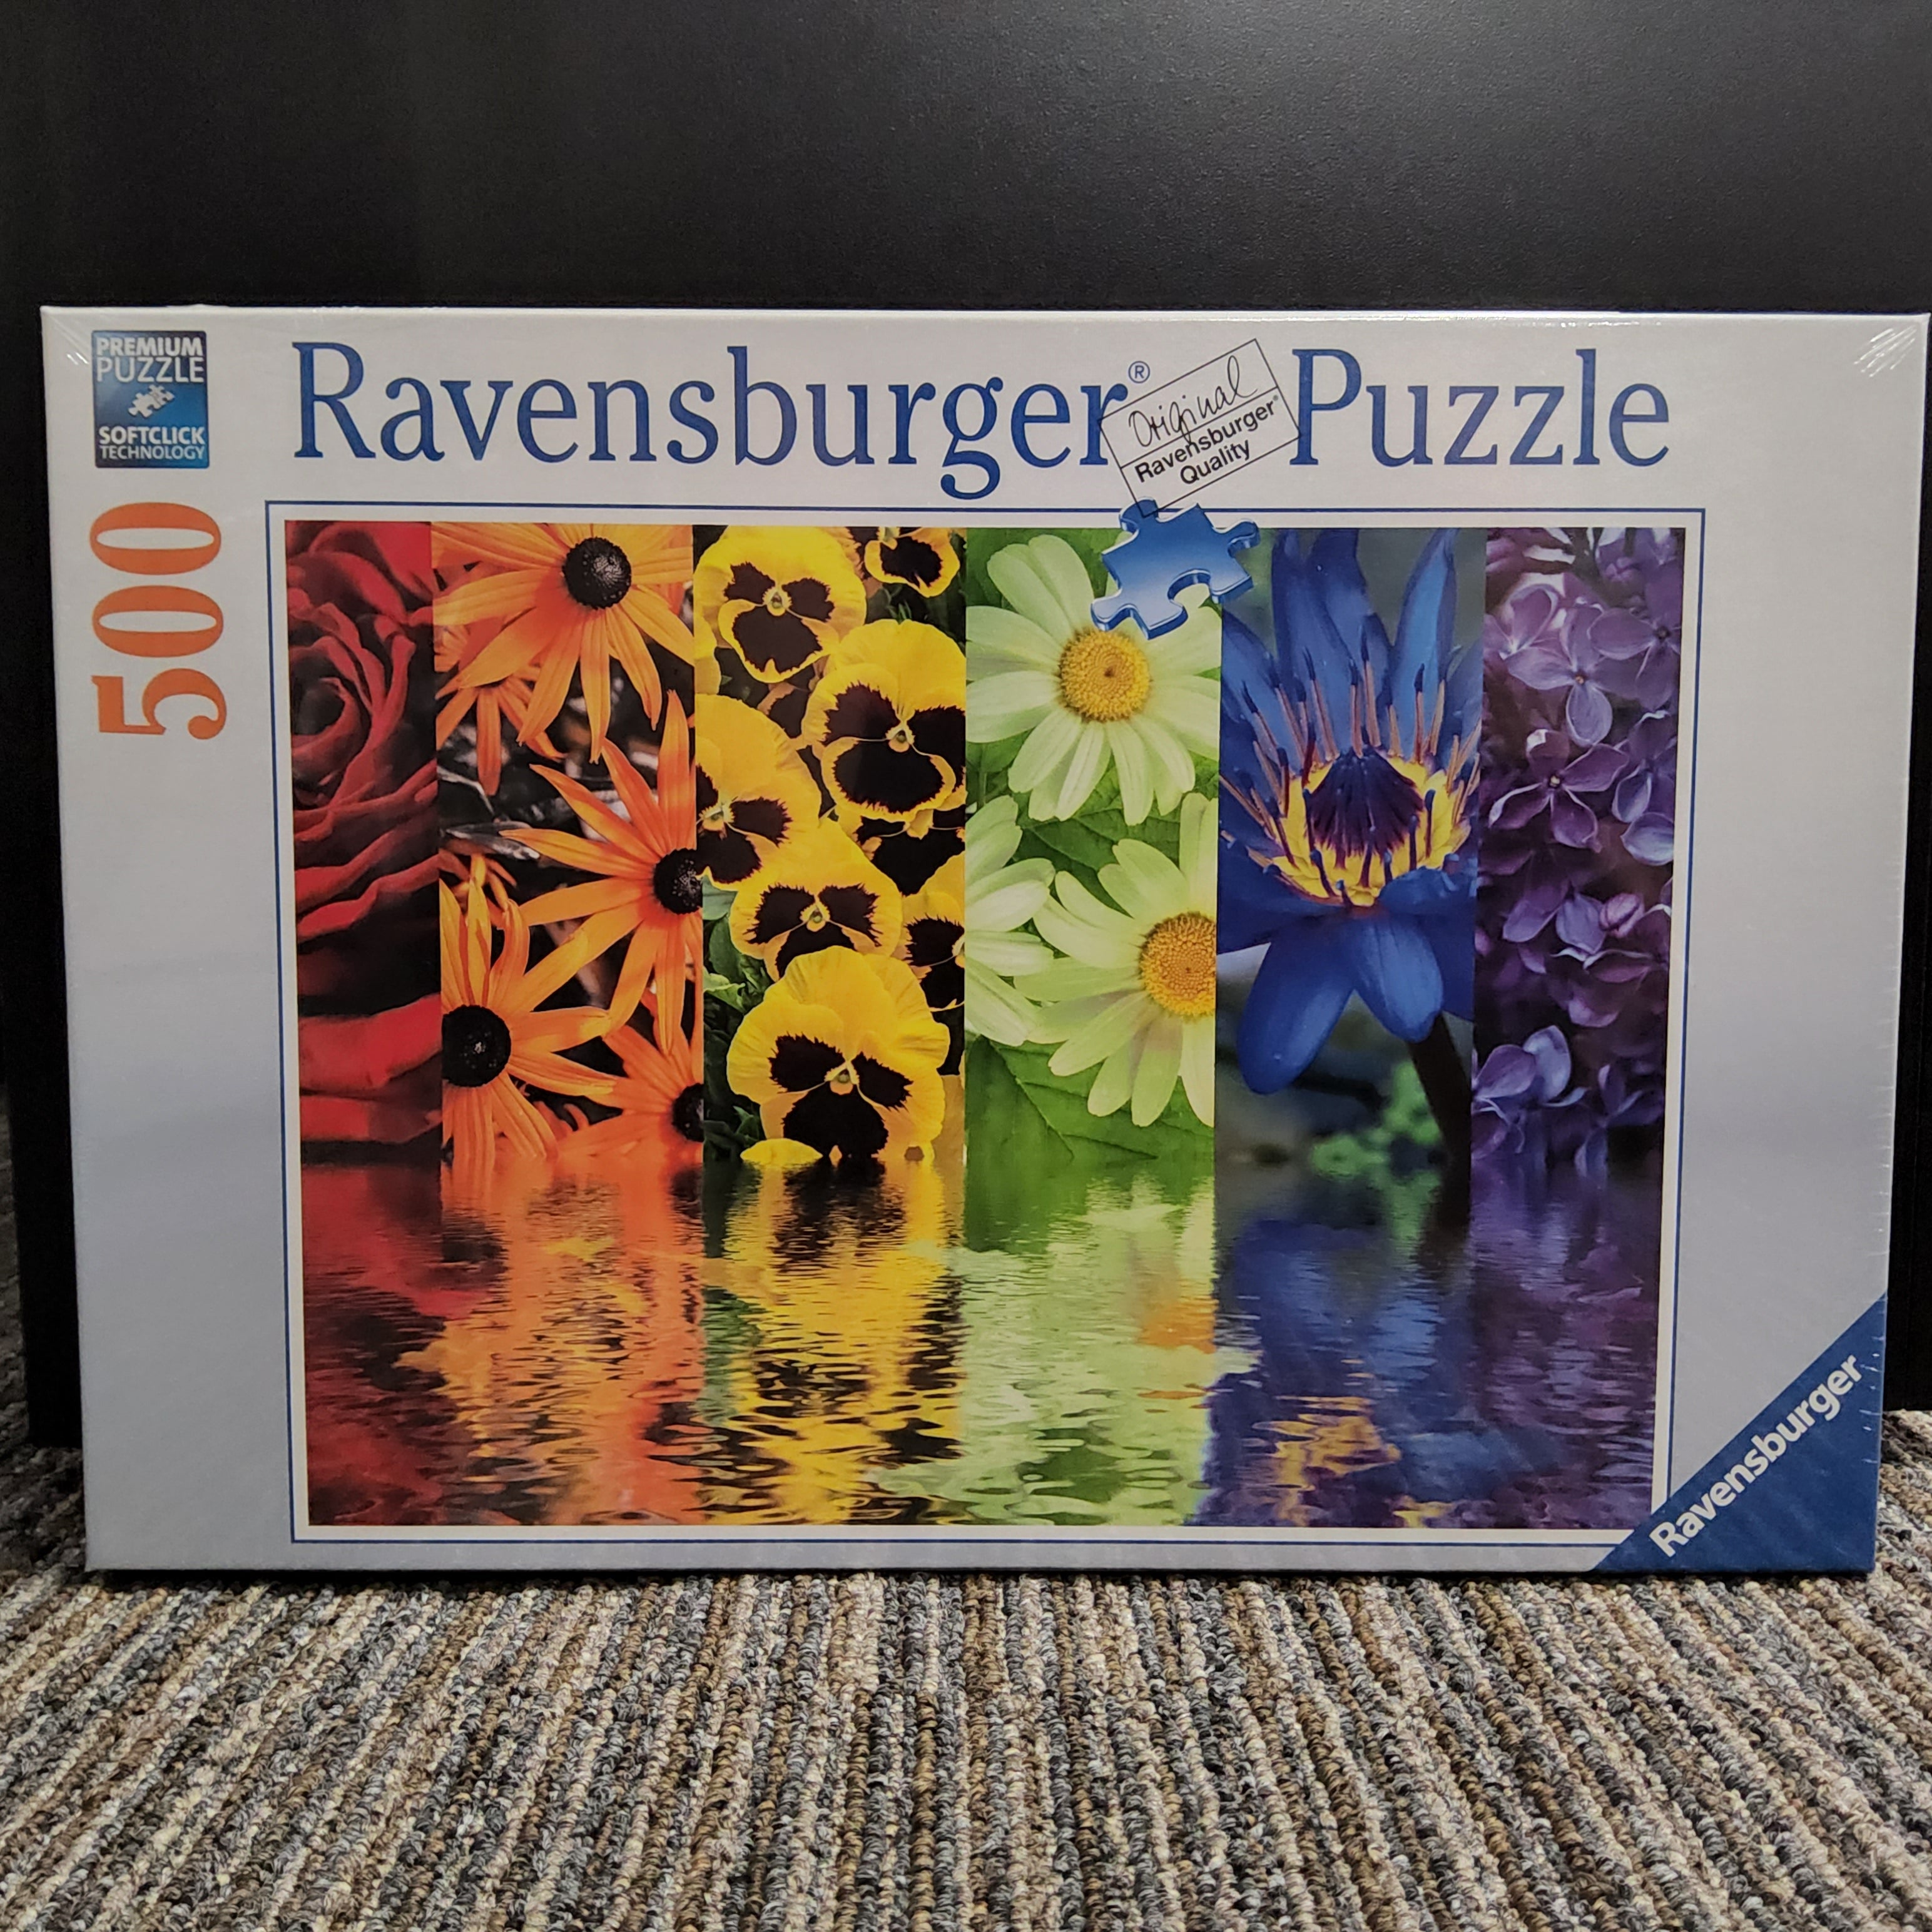 Ravensburger Puzzle - Floral Reflections - 500 pieces - #16446